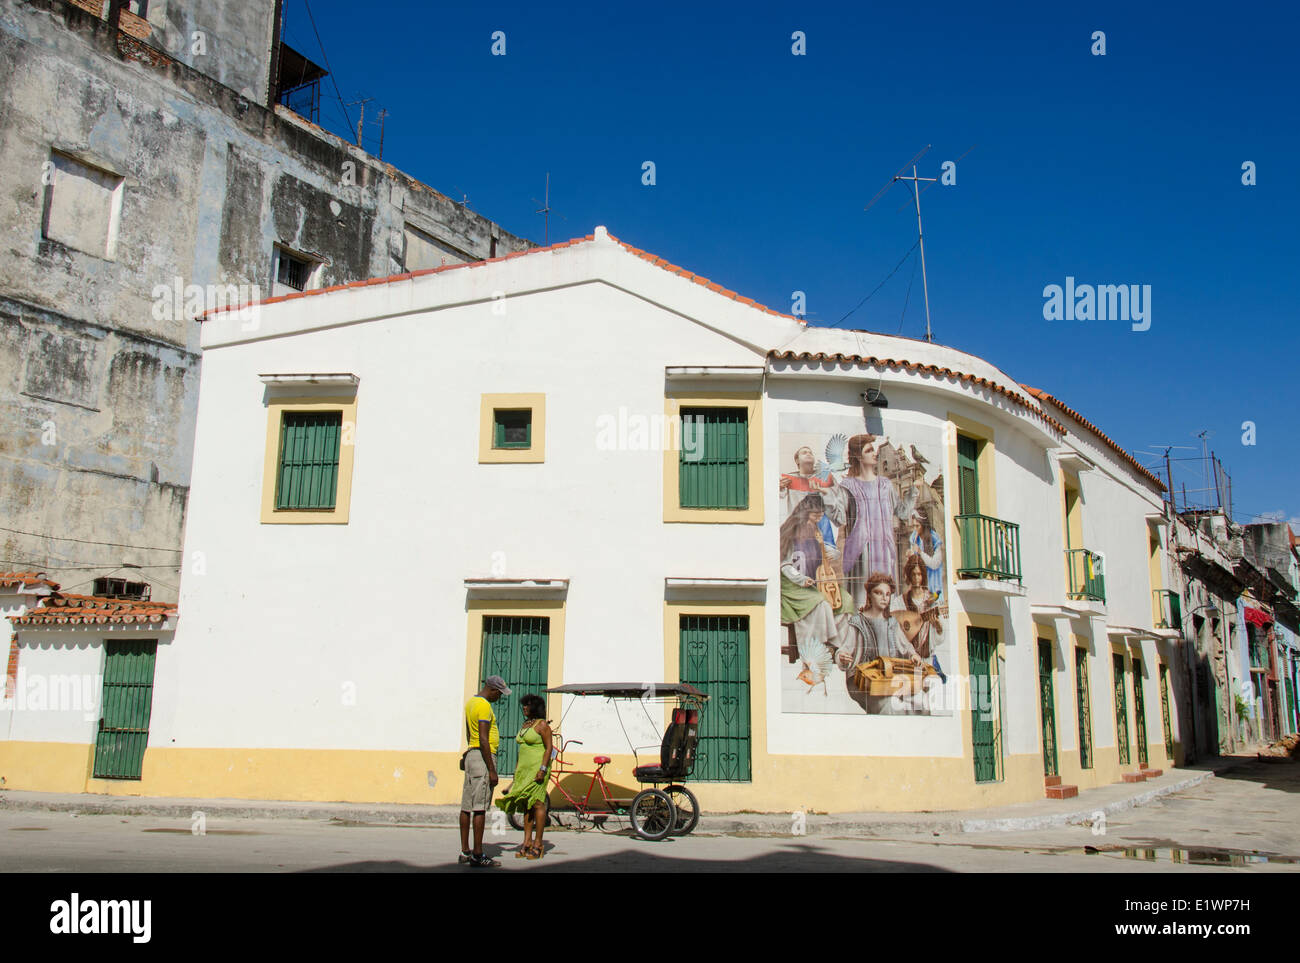 Fresque murale et pedicabs, La Havane, Cuba Banque D'Images